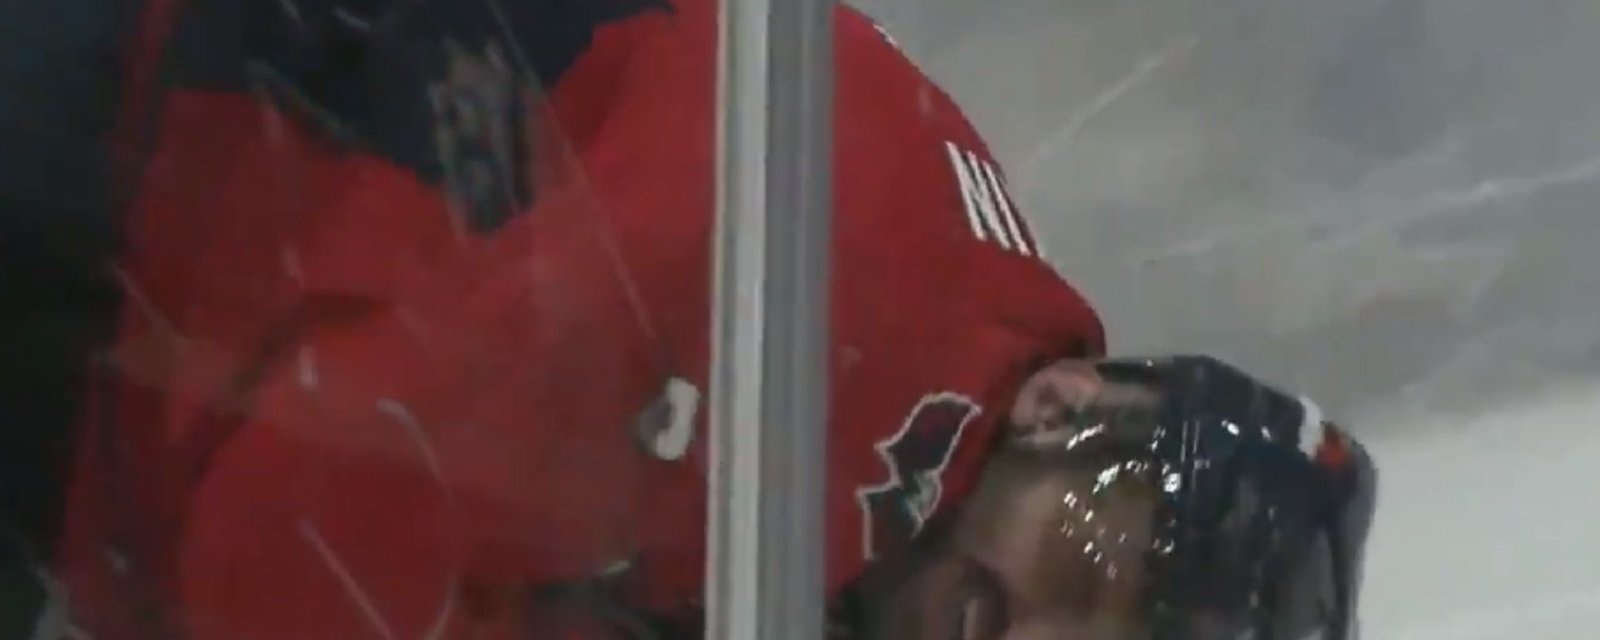 VIDEO | Alex Ovechkin blessé sérieusement dans le match de ce soir contre Toronto